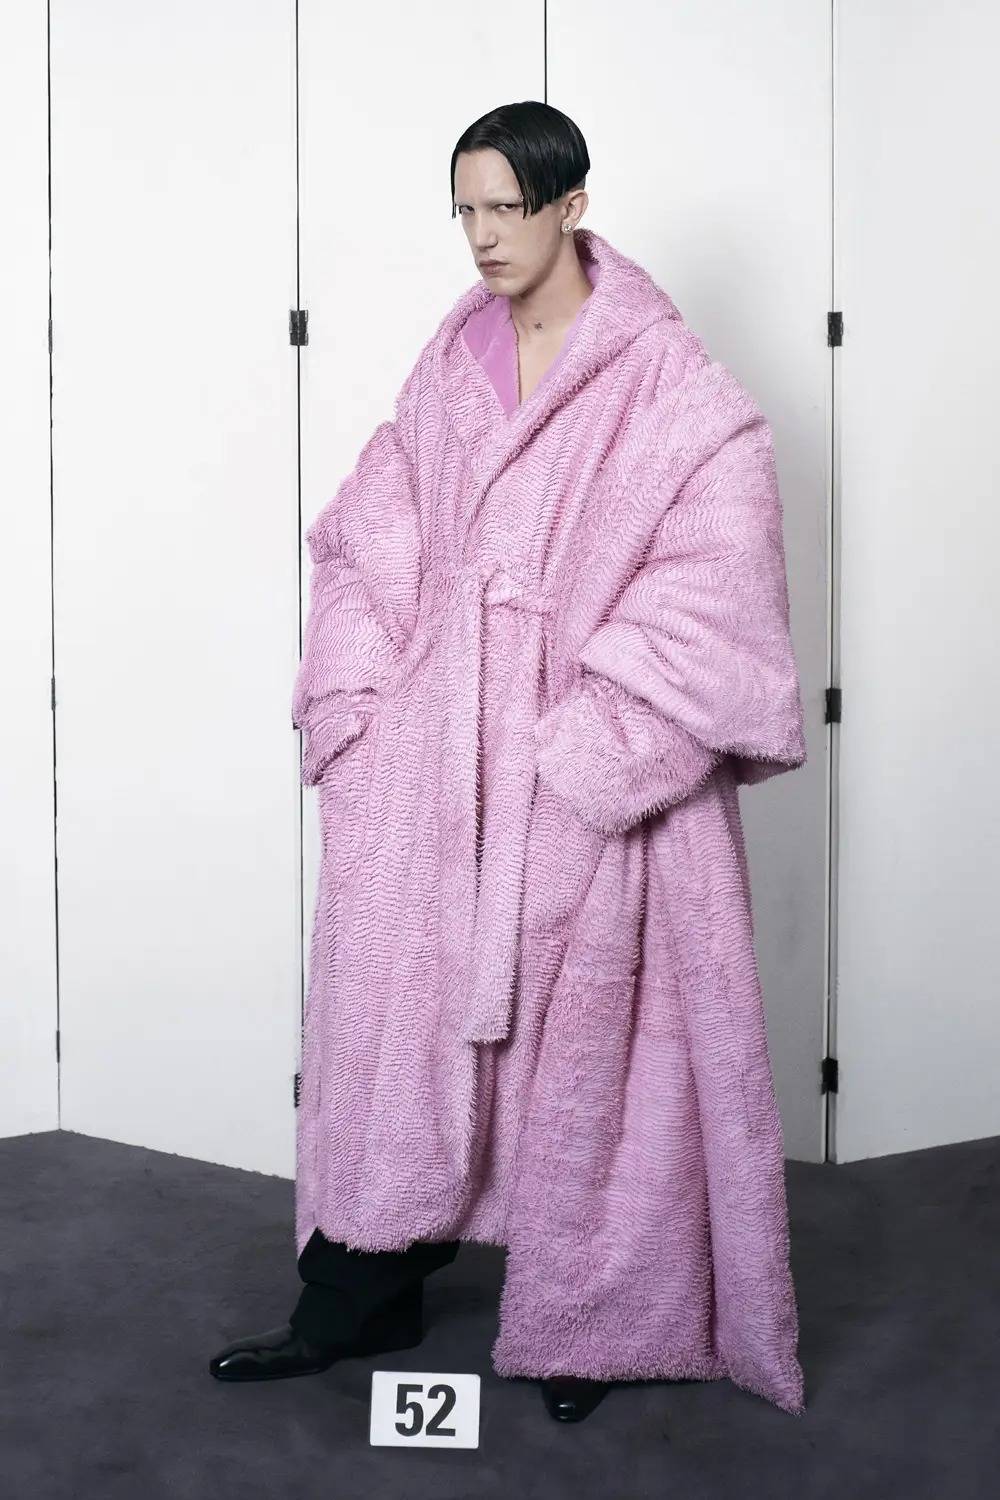 Balenciaga haute couture automne-hiver 2021